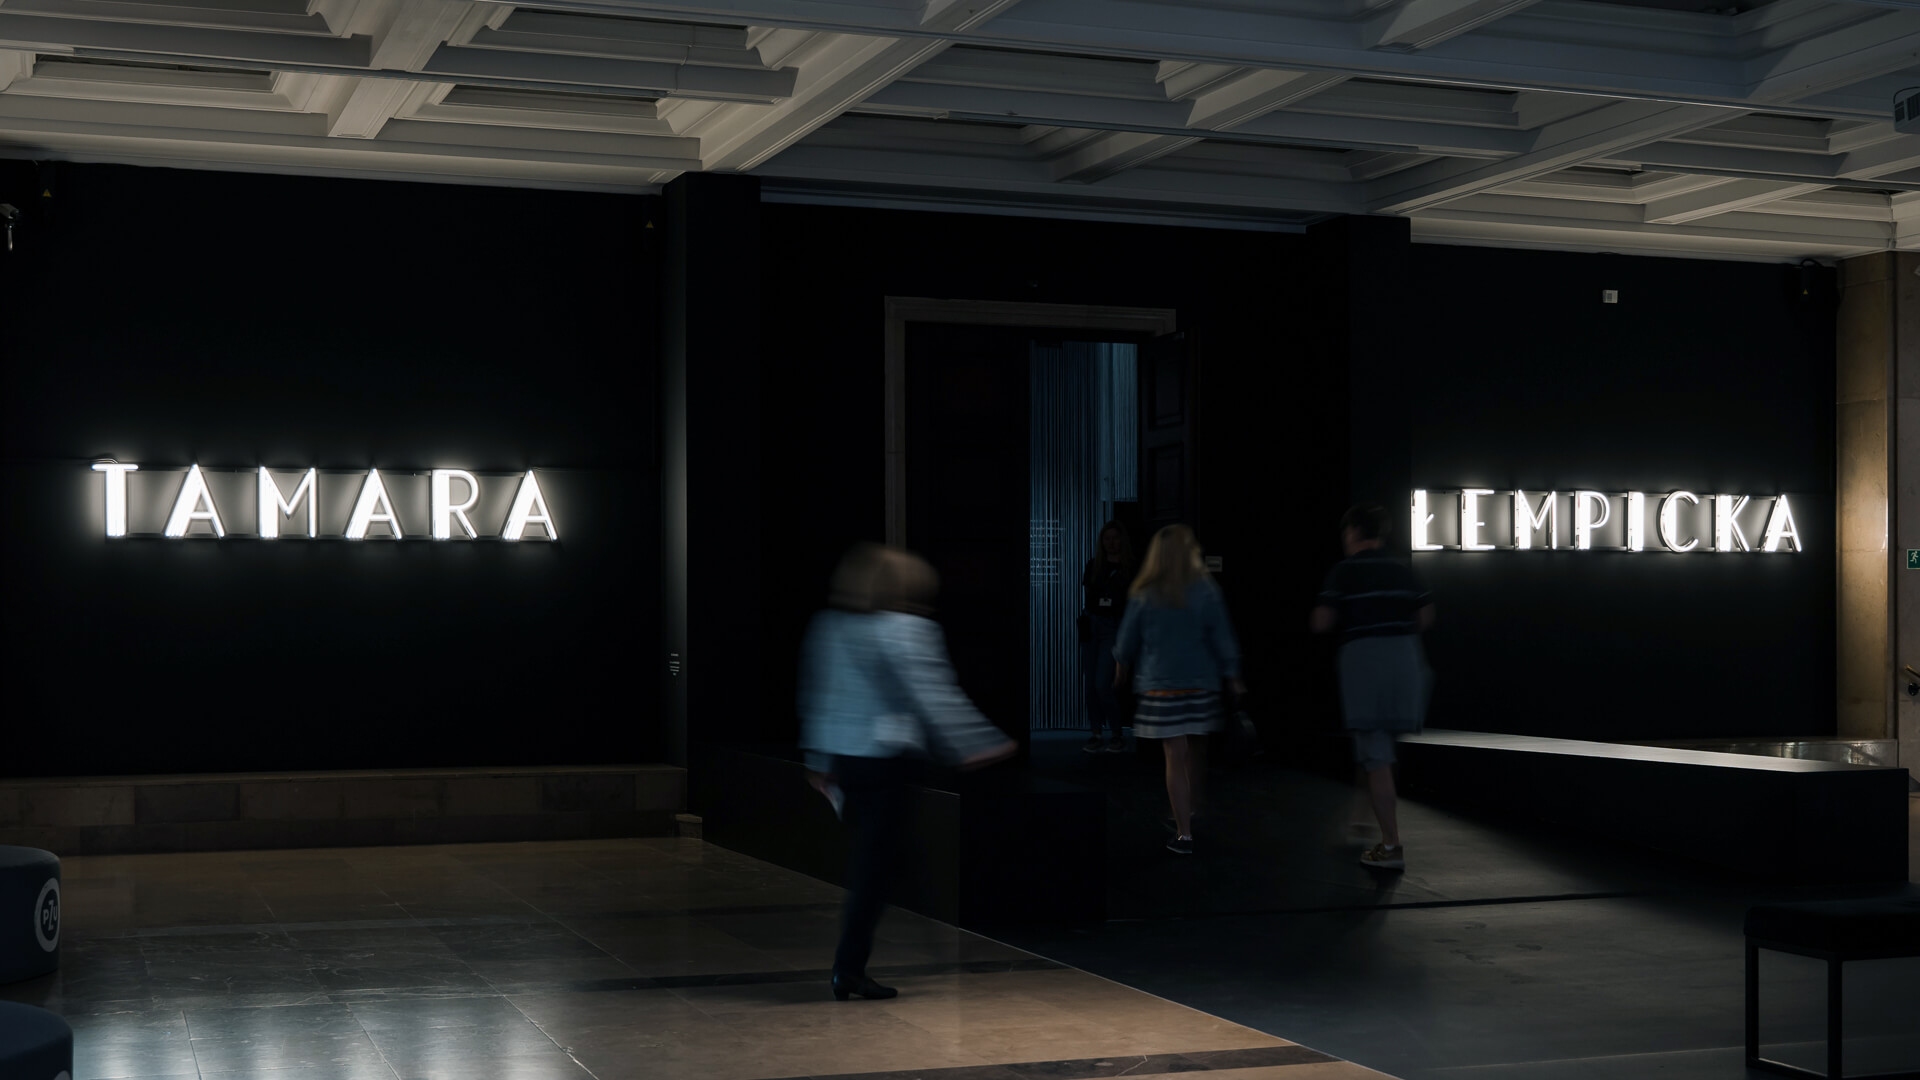 Neon Tamara Lempicka - Retro neon letters in white